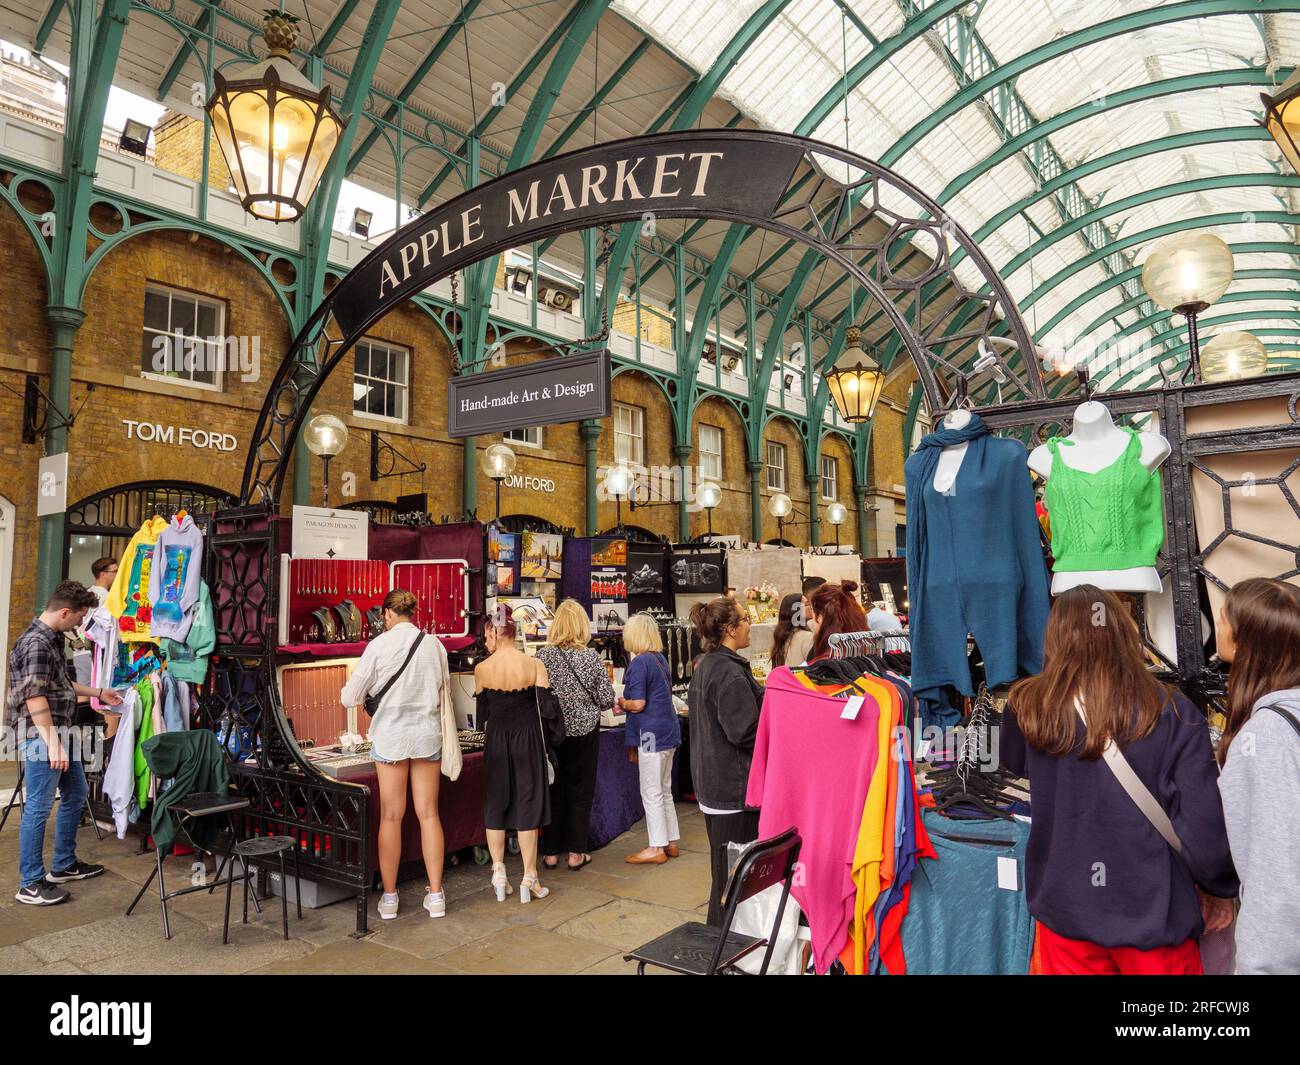 Les gens qui font leurs courses sur les étals du marché Apple Market de Covent Garden, Londres, Royaume-Uni Banque D'Images